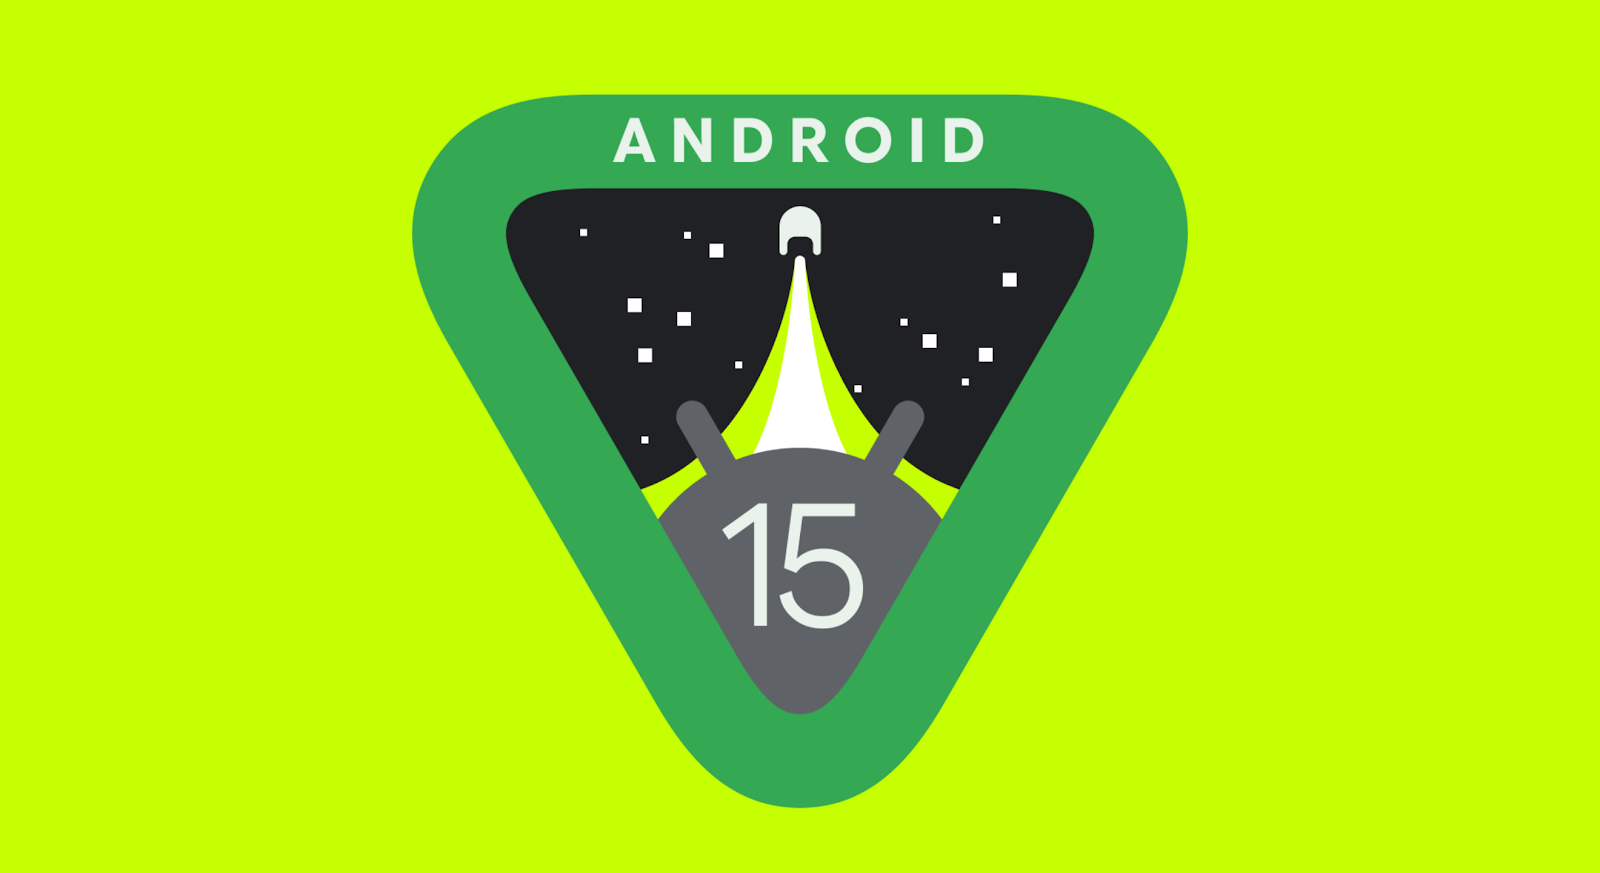 Android 15 позволит найти даже выключенный смартфон